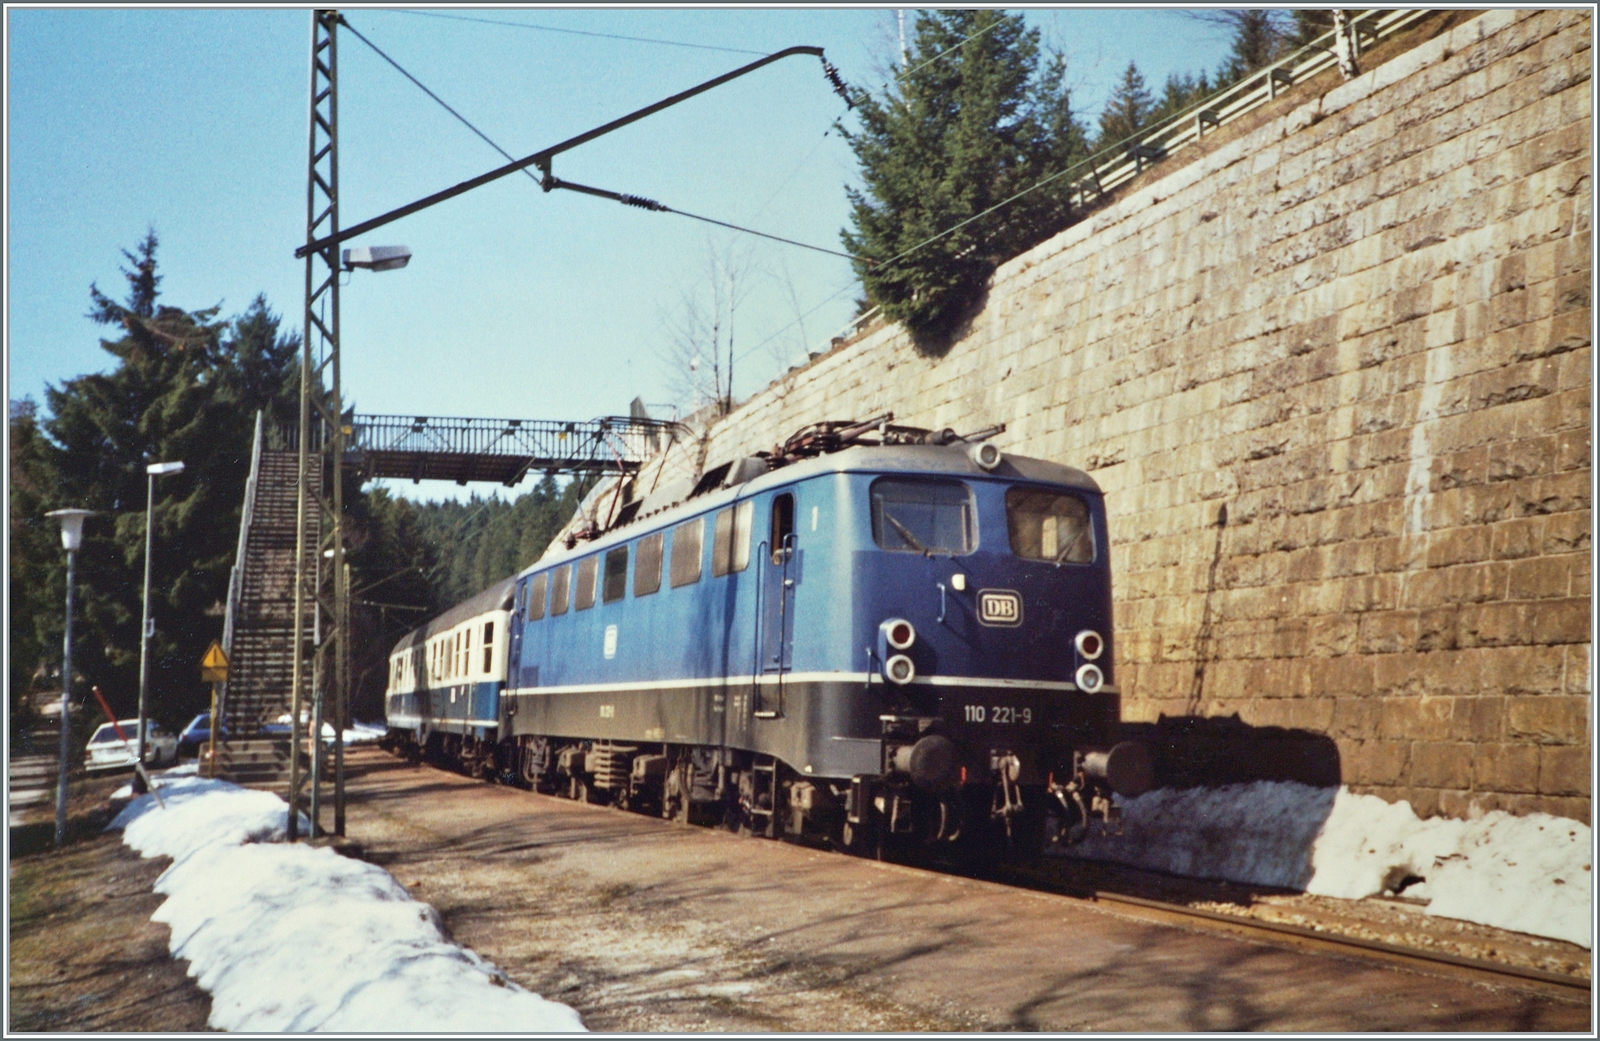 Die DB 110 221-9 erreicht mit ihrem FD 703 von Münter (Westfallen) kommend den Zielbahnhof Seebrugg.

Analogbild vom April 1988